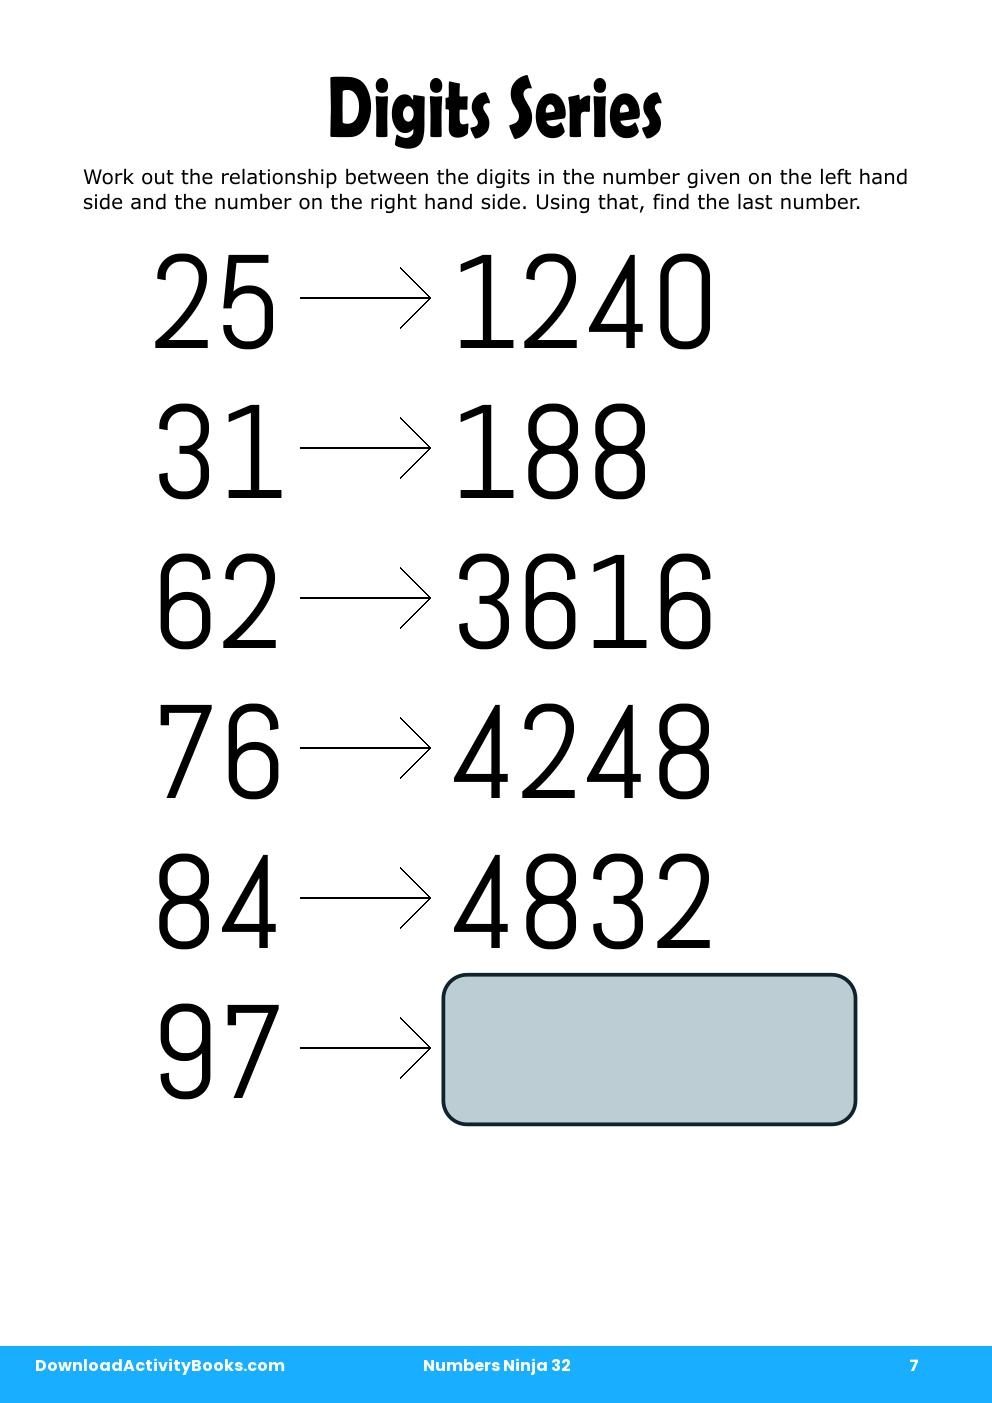 Digits Series in Numbers Ninja 32